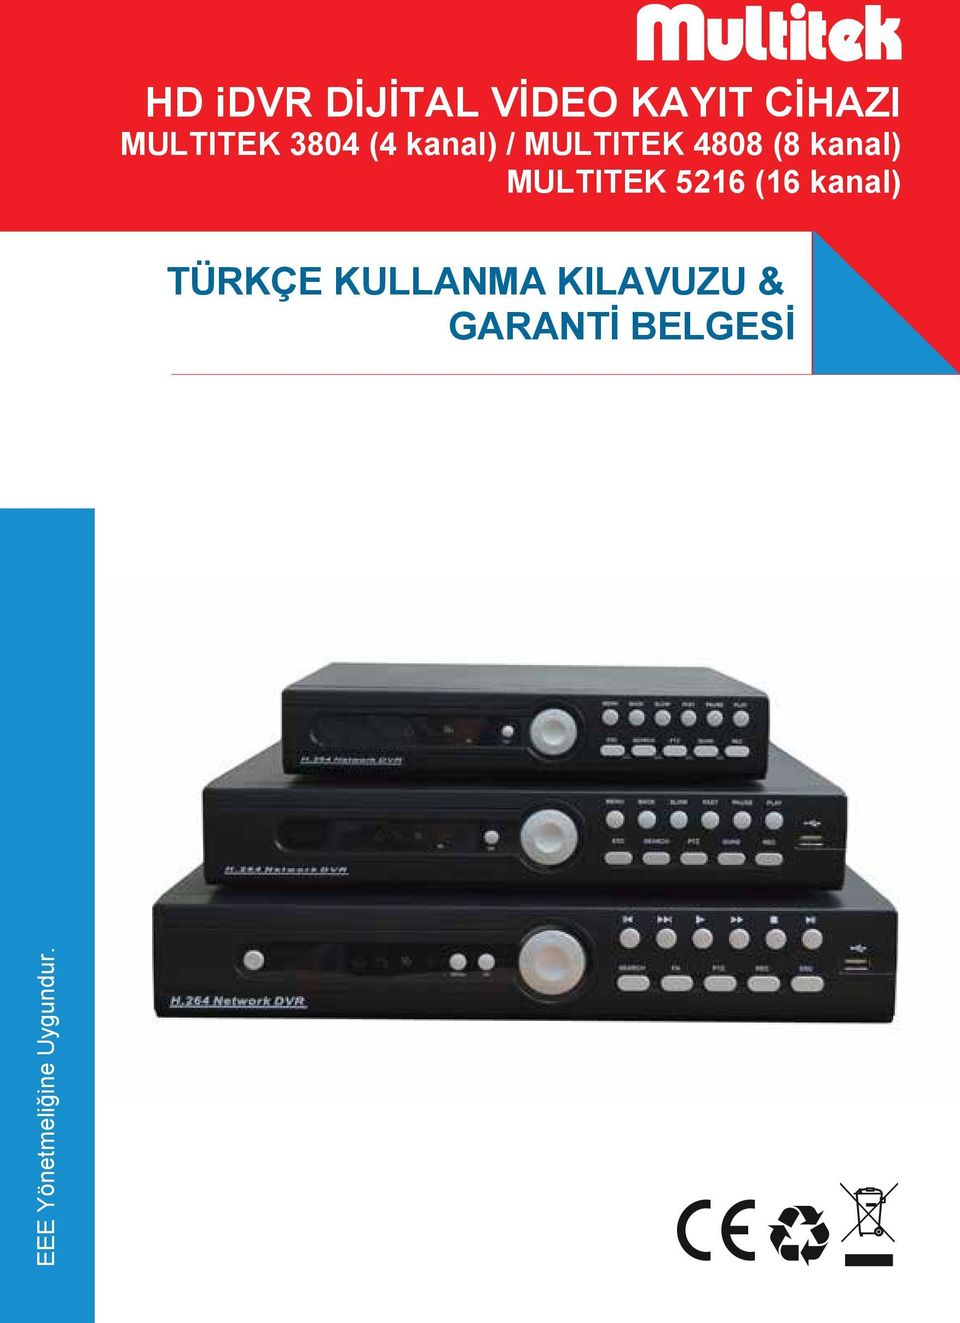 MULTITEK 5216 (16 kanal) TÜRKÇE KULLANMA